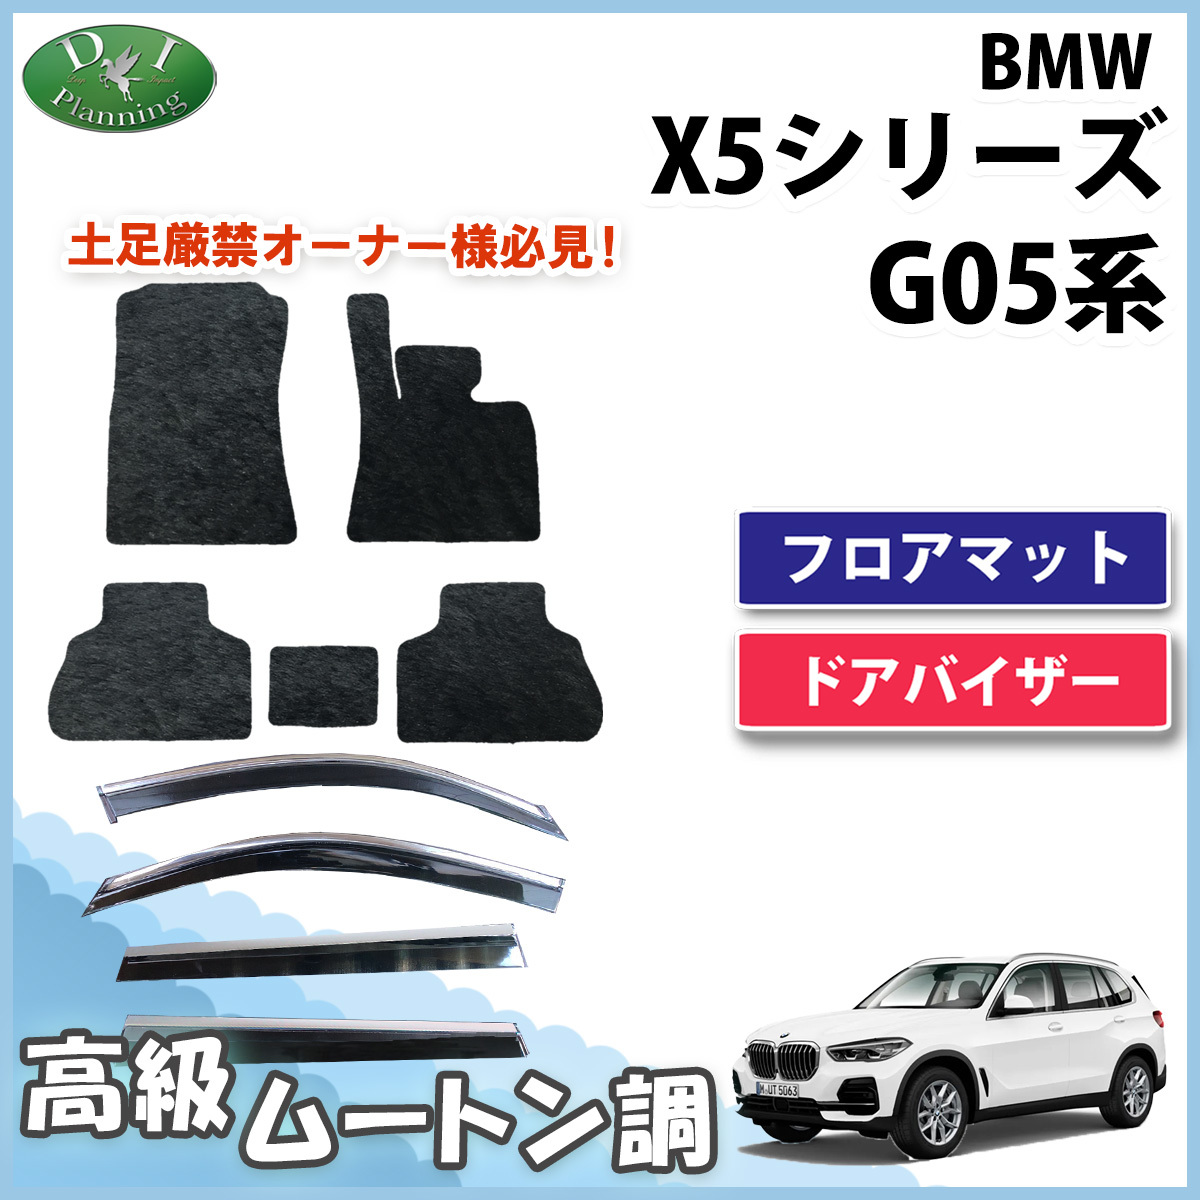 BMW X5 G05 5 посадочных мест коврик на пол & ветровик двери высококлассный под мутон норка style автомобильный коврик машина сопутствующие товары неоригинальный новый товар автомобиль коврик 